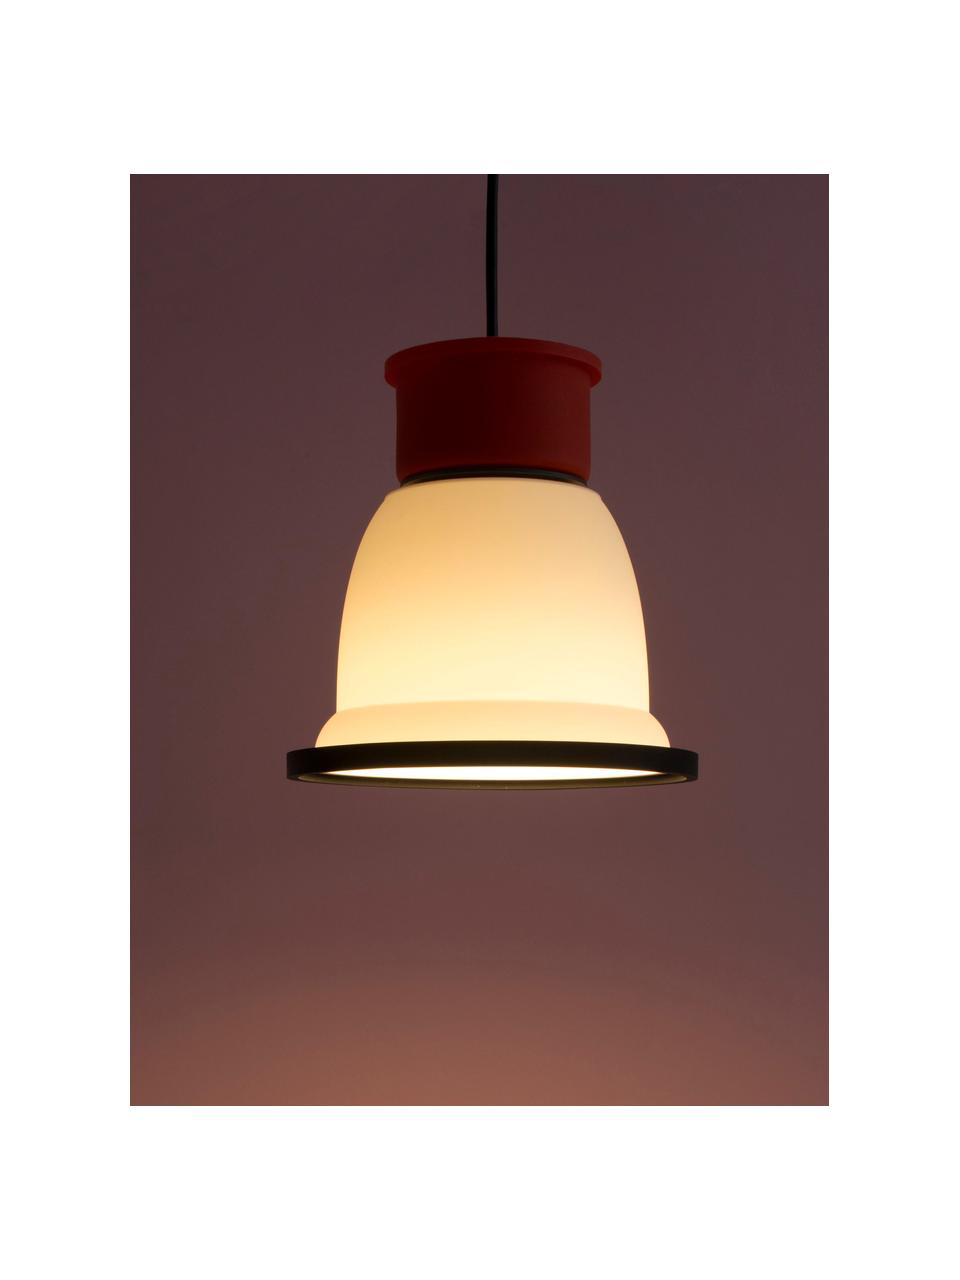 Kleine Pendelleuchte CL1, Lampenschirm: Silikon, Kunststoff, Weiss, Rot, Schwarz, Ø 18 x H 18 cm